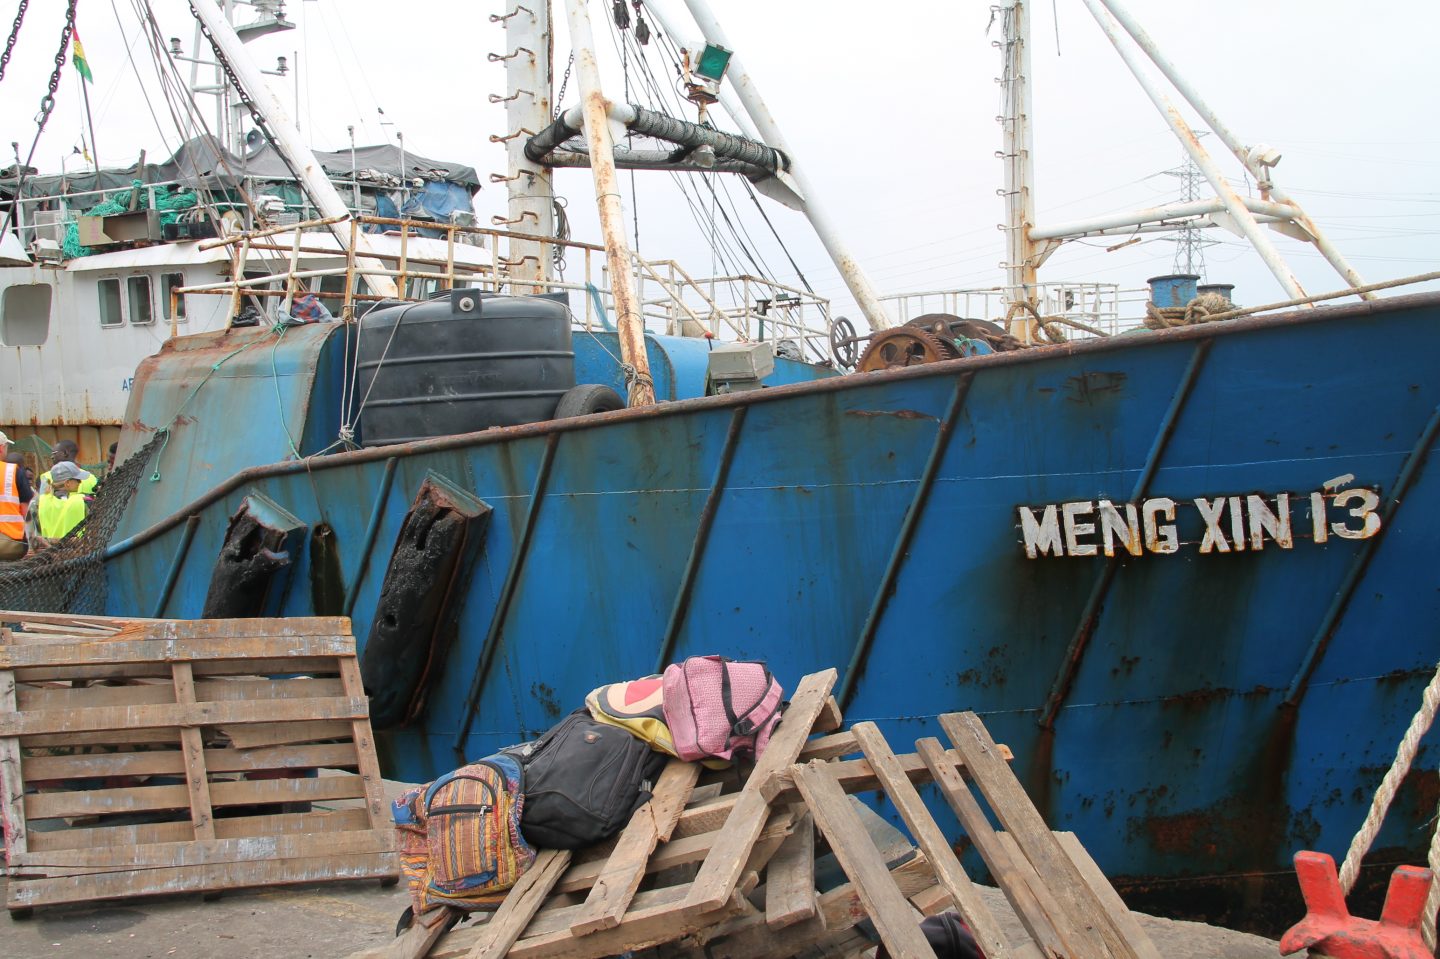 Meng Xin 13 trawling vessel